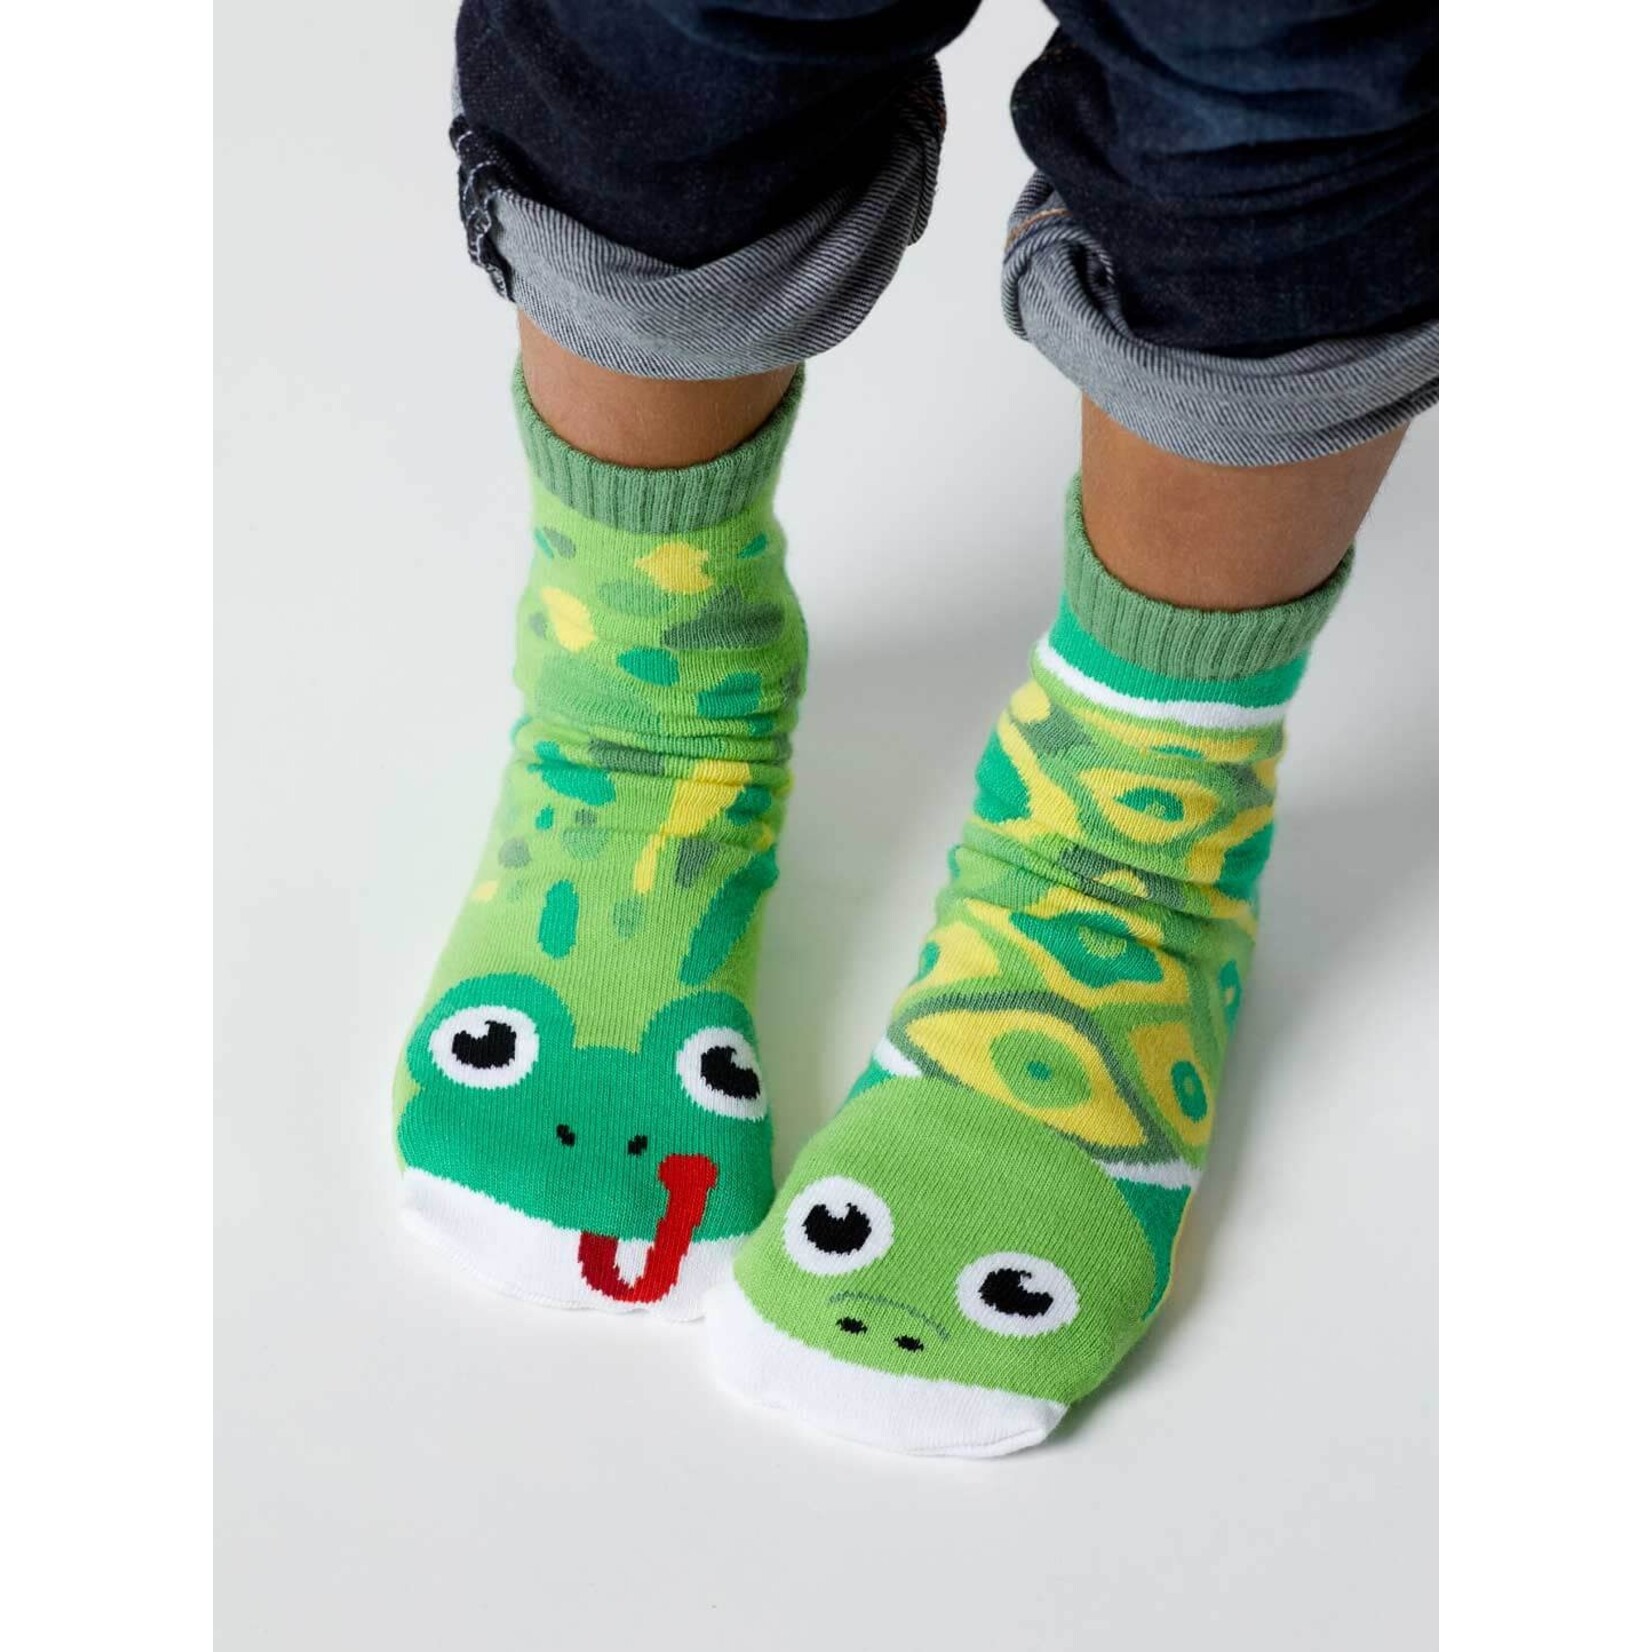 Pals Socks - Artist Frog & Turtle, Ages 4-8